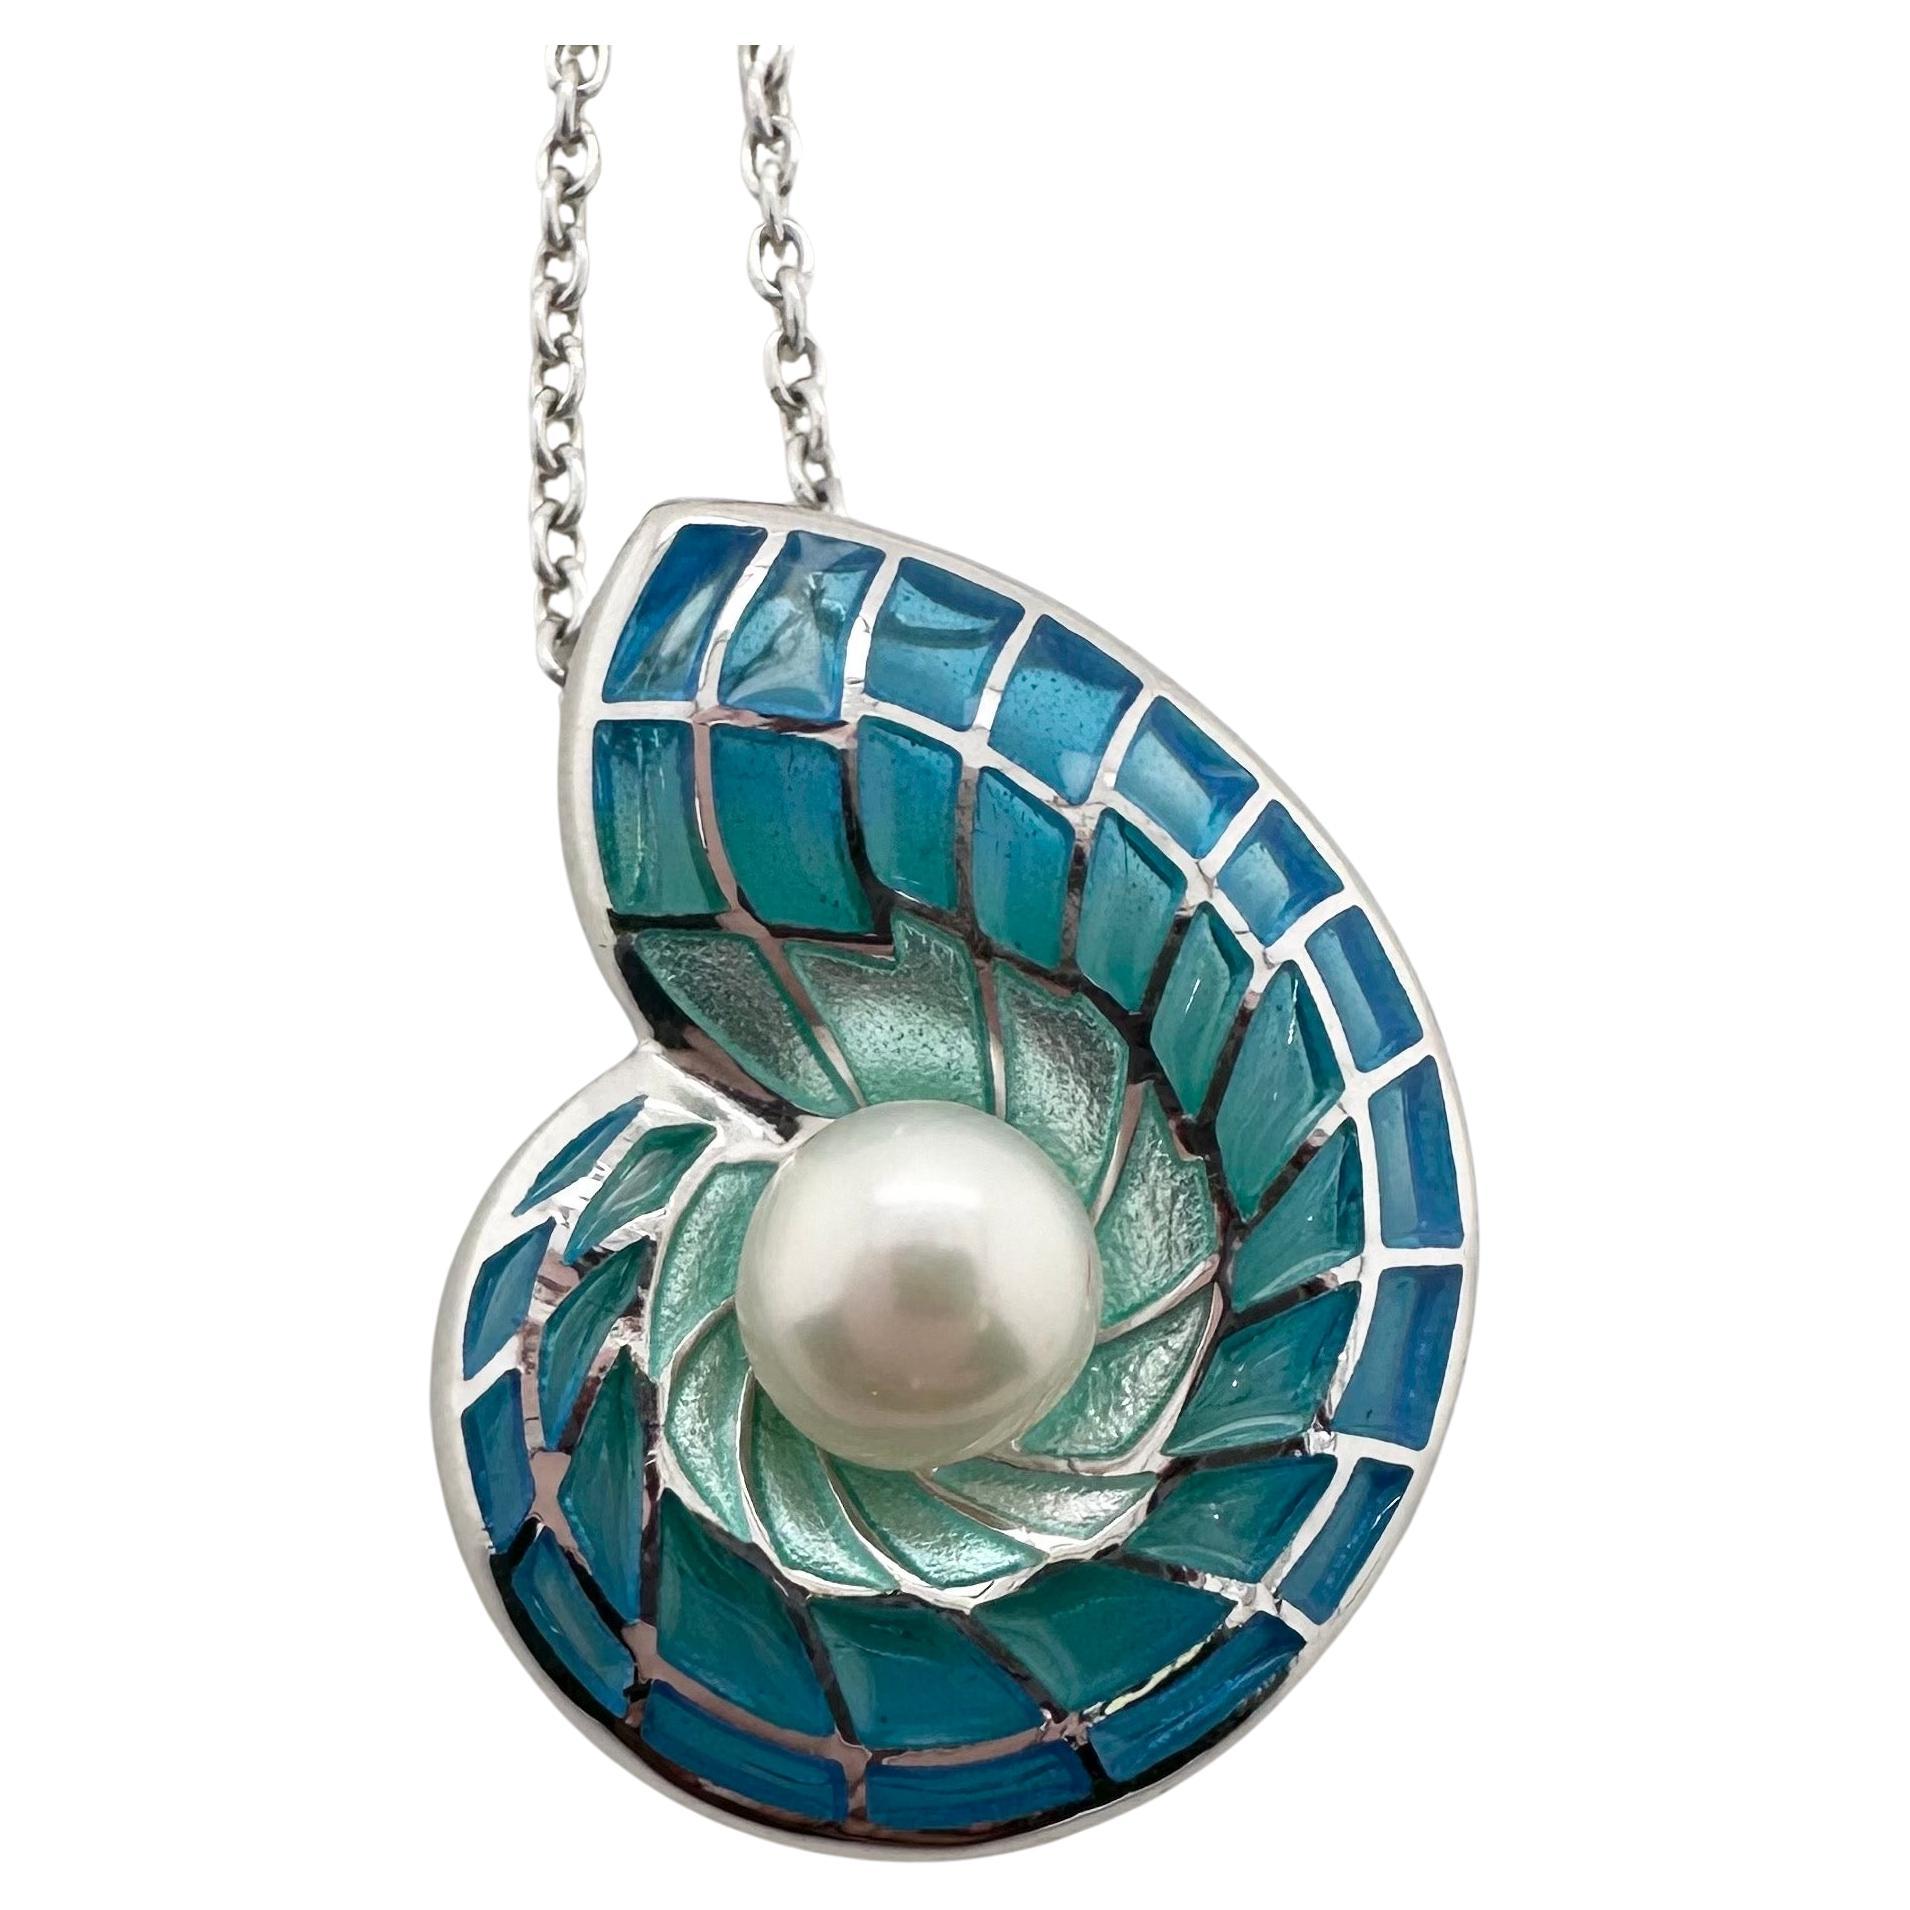 Sea shell pearl pendant necklace liquid glass enamel rare pendant 925 silver 20"